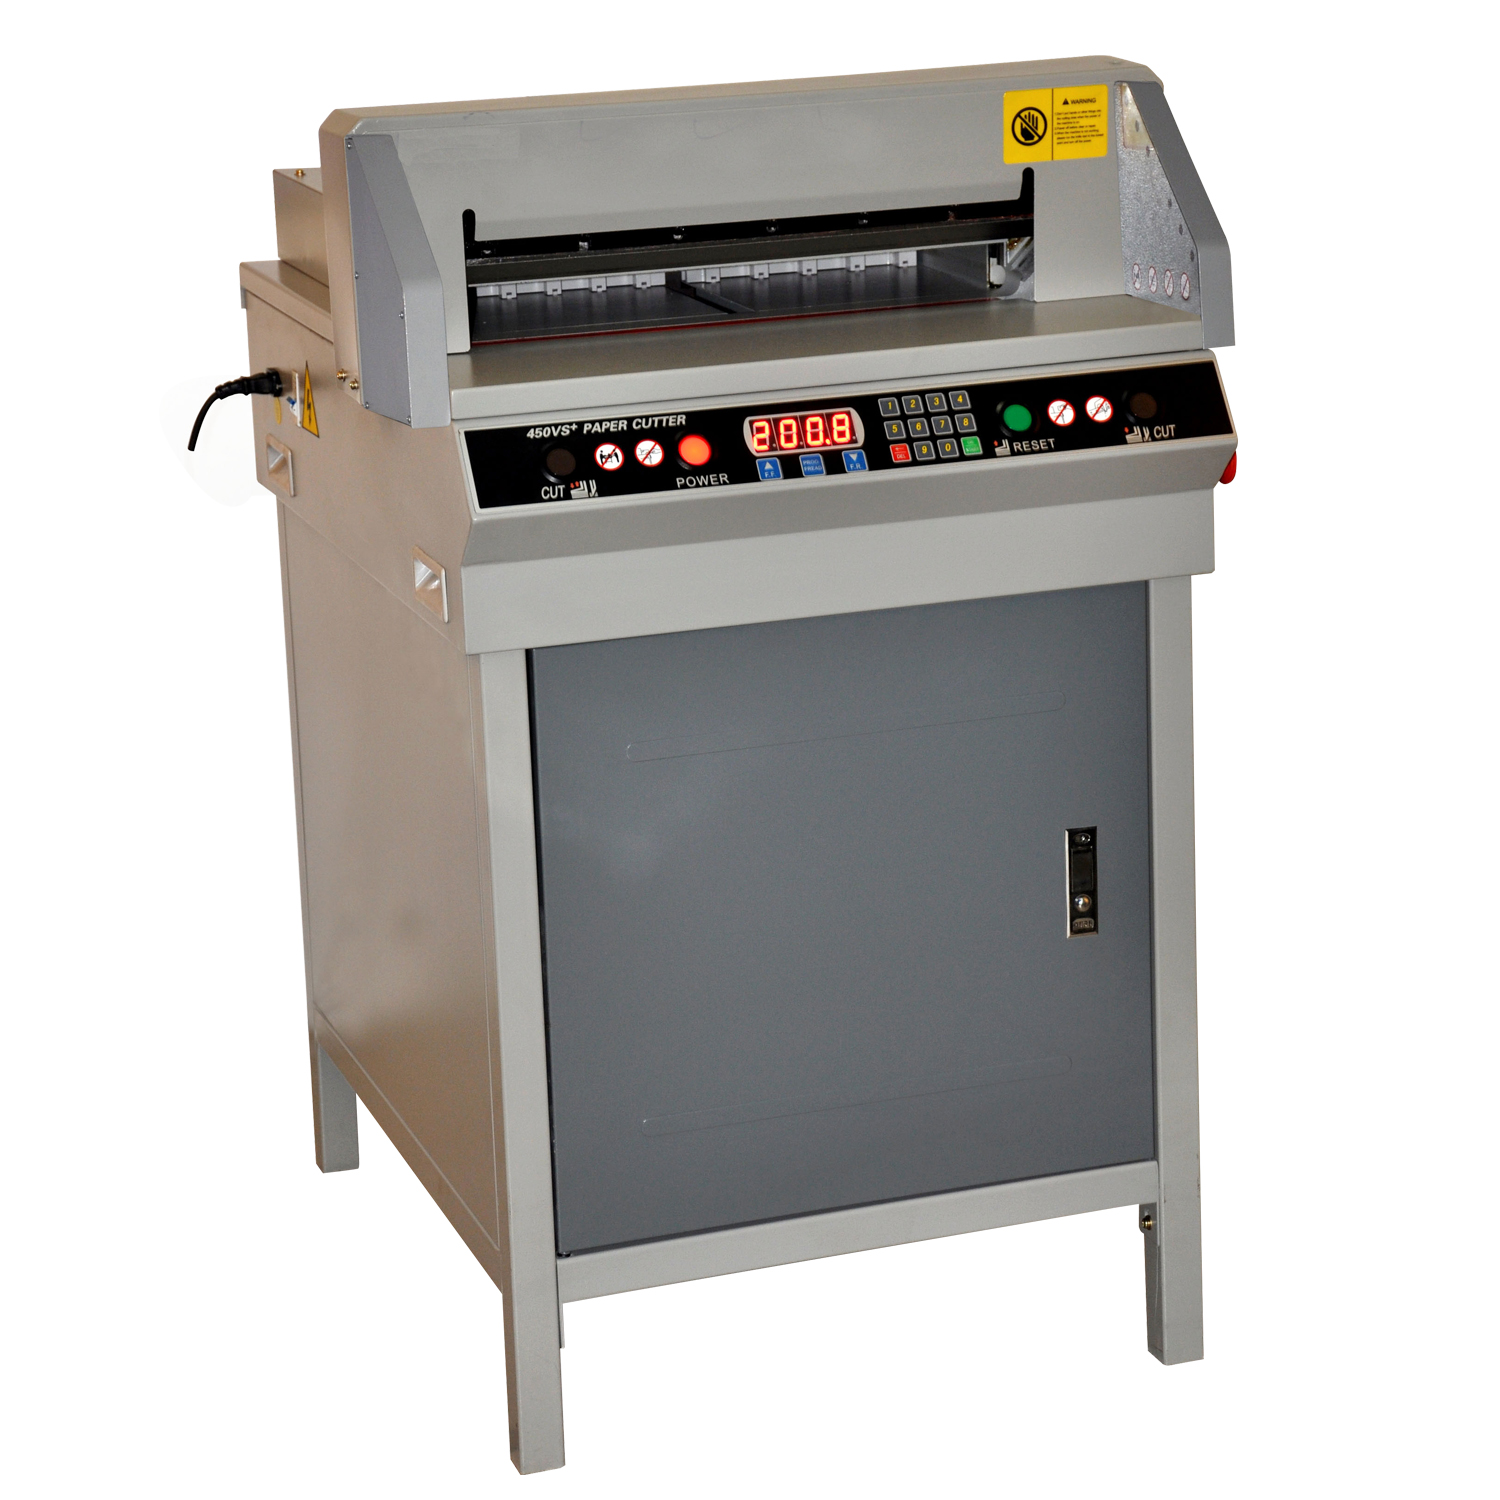 Electric Paper Cutter Machine G450VS+